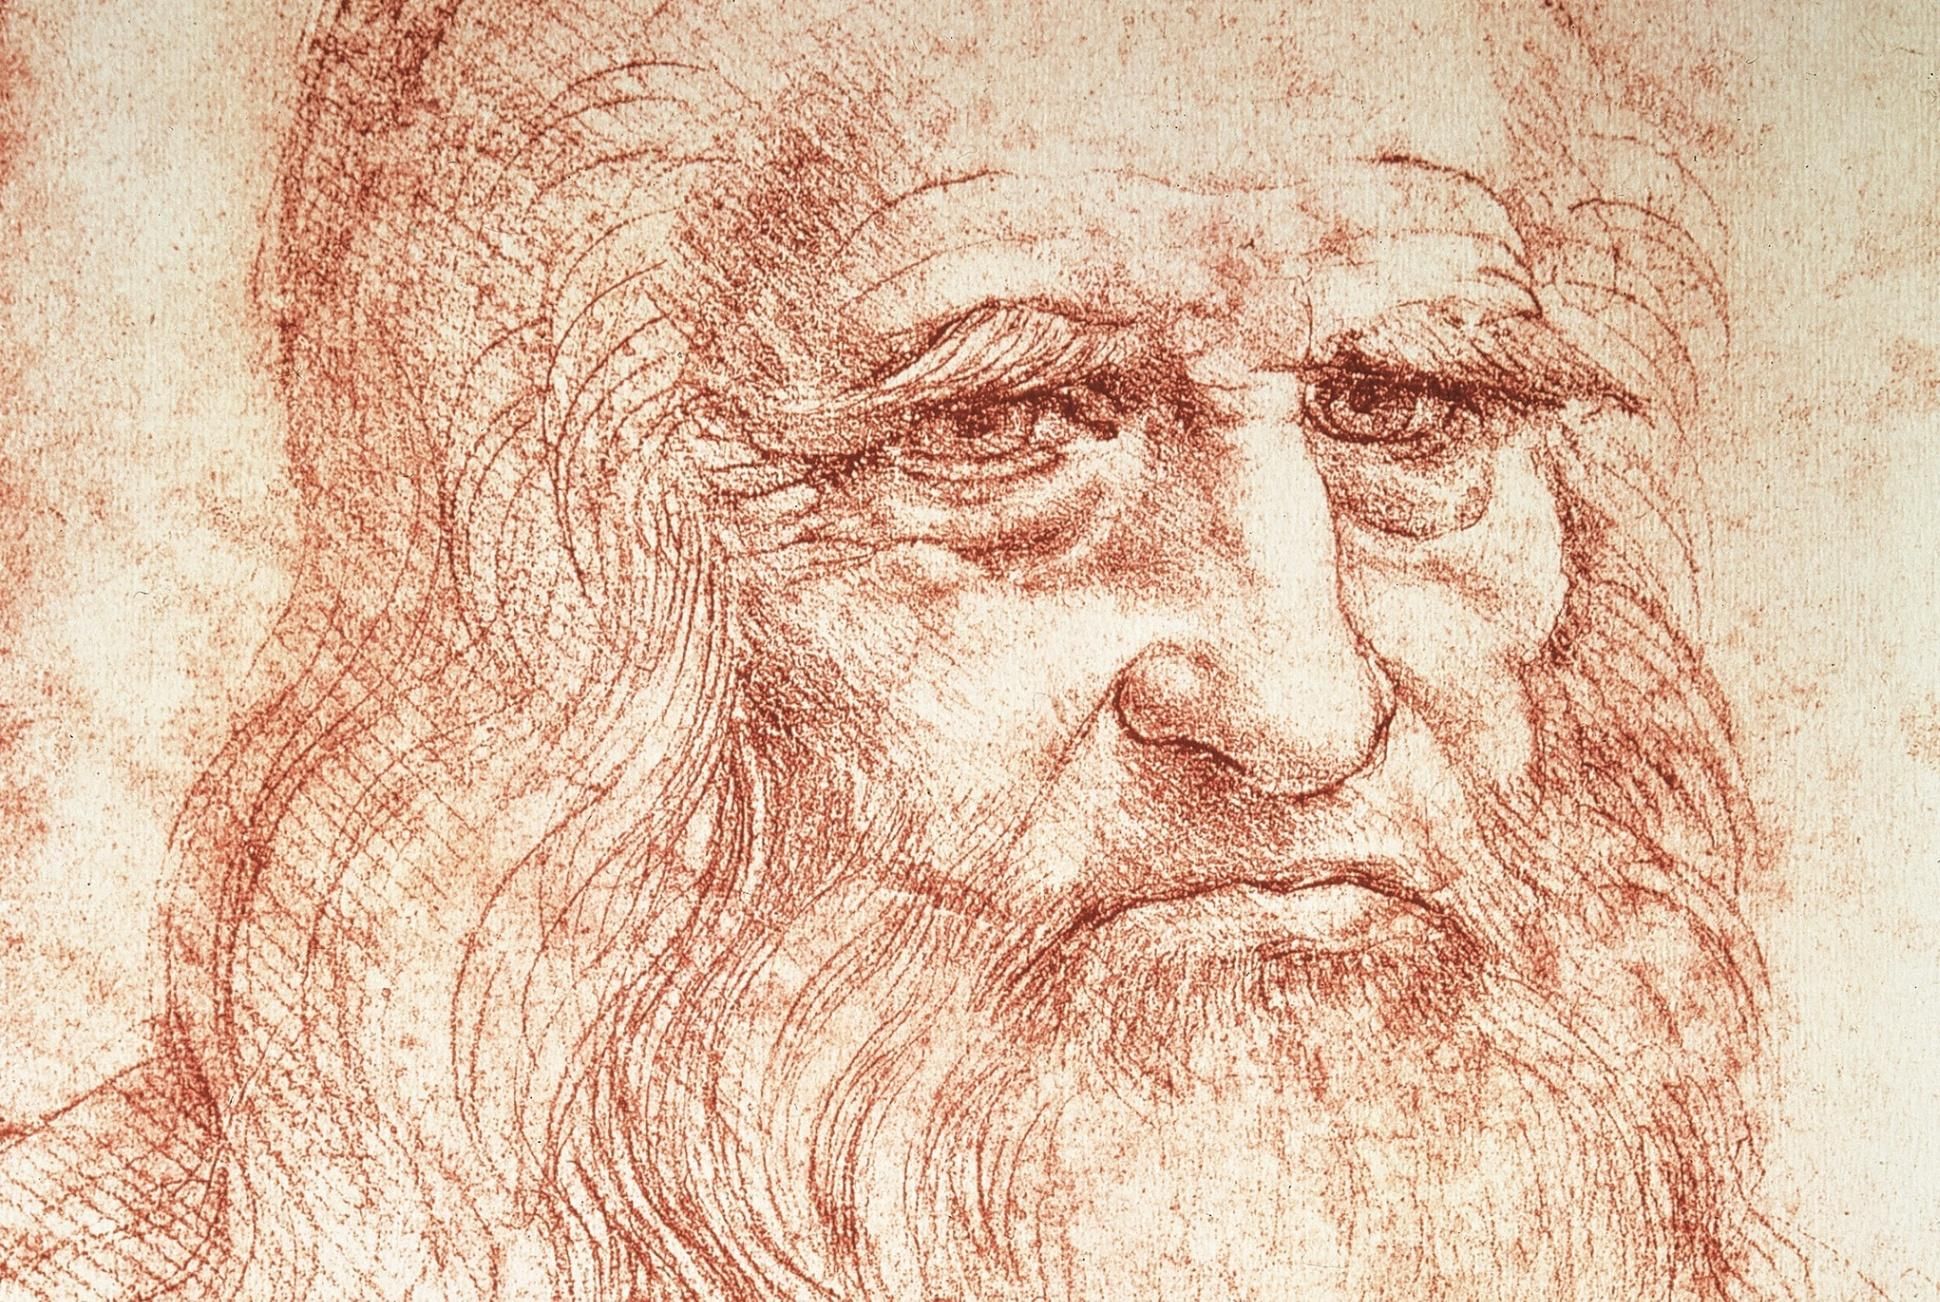 Гении возрождения. Леонардо да Винчи автопортрет 1512. Леонардо да Винчи портрет. Леонардо да Винчи (1452-1519). Леонардо да Винчи (1452 – 1509).